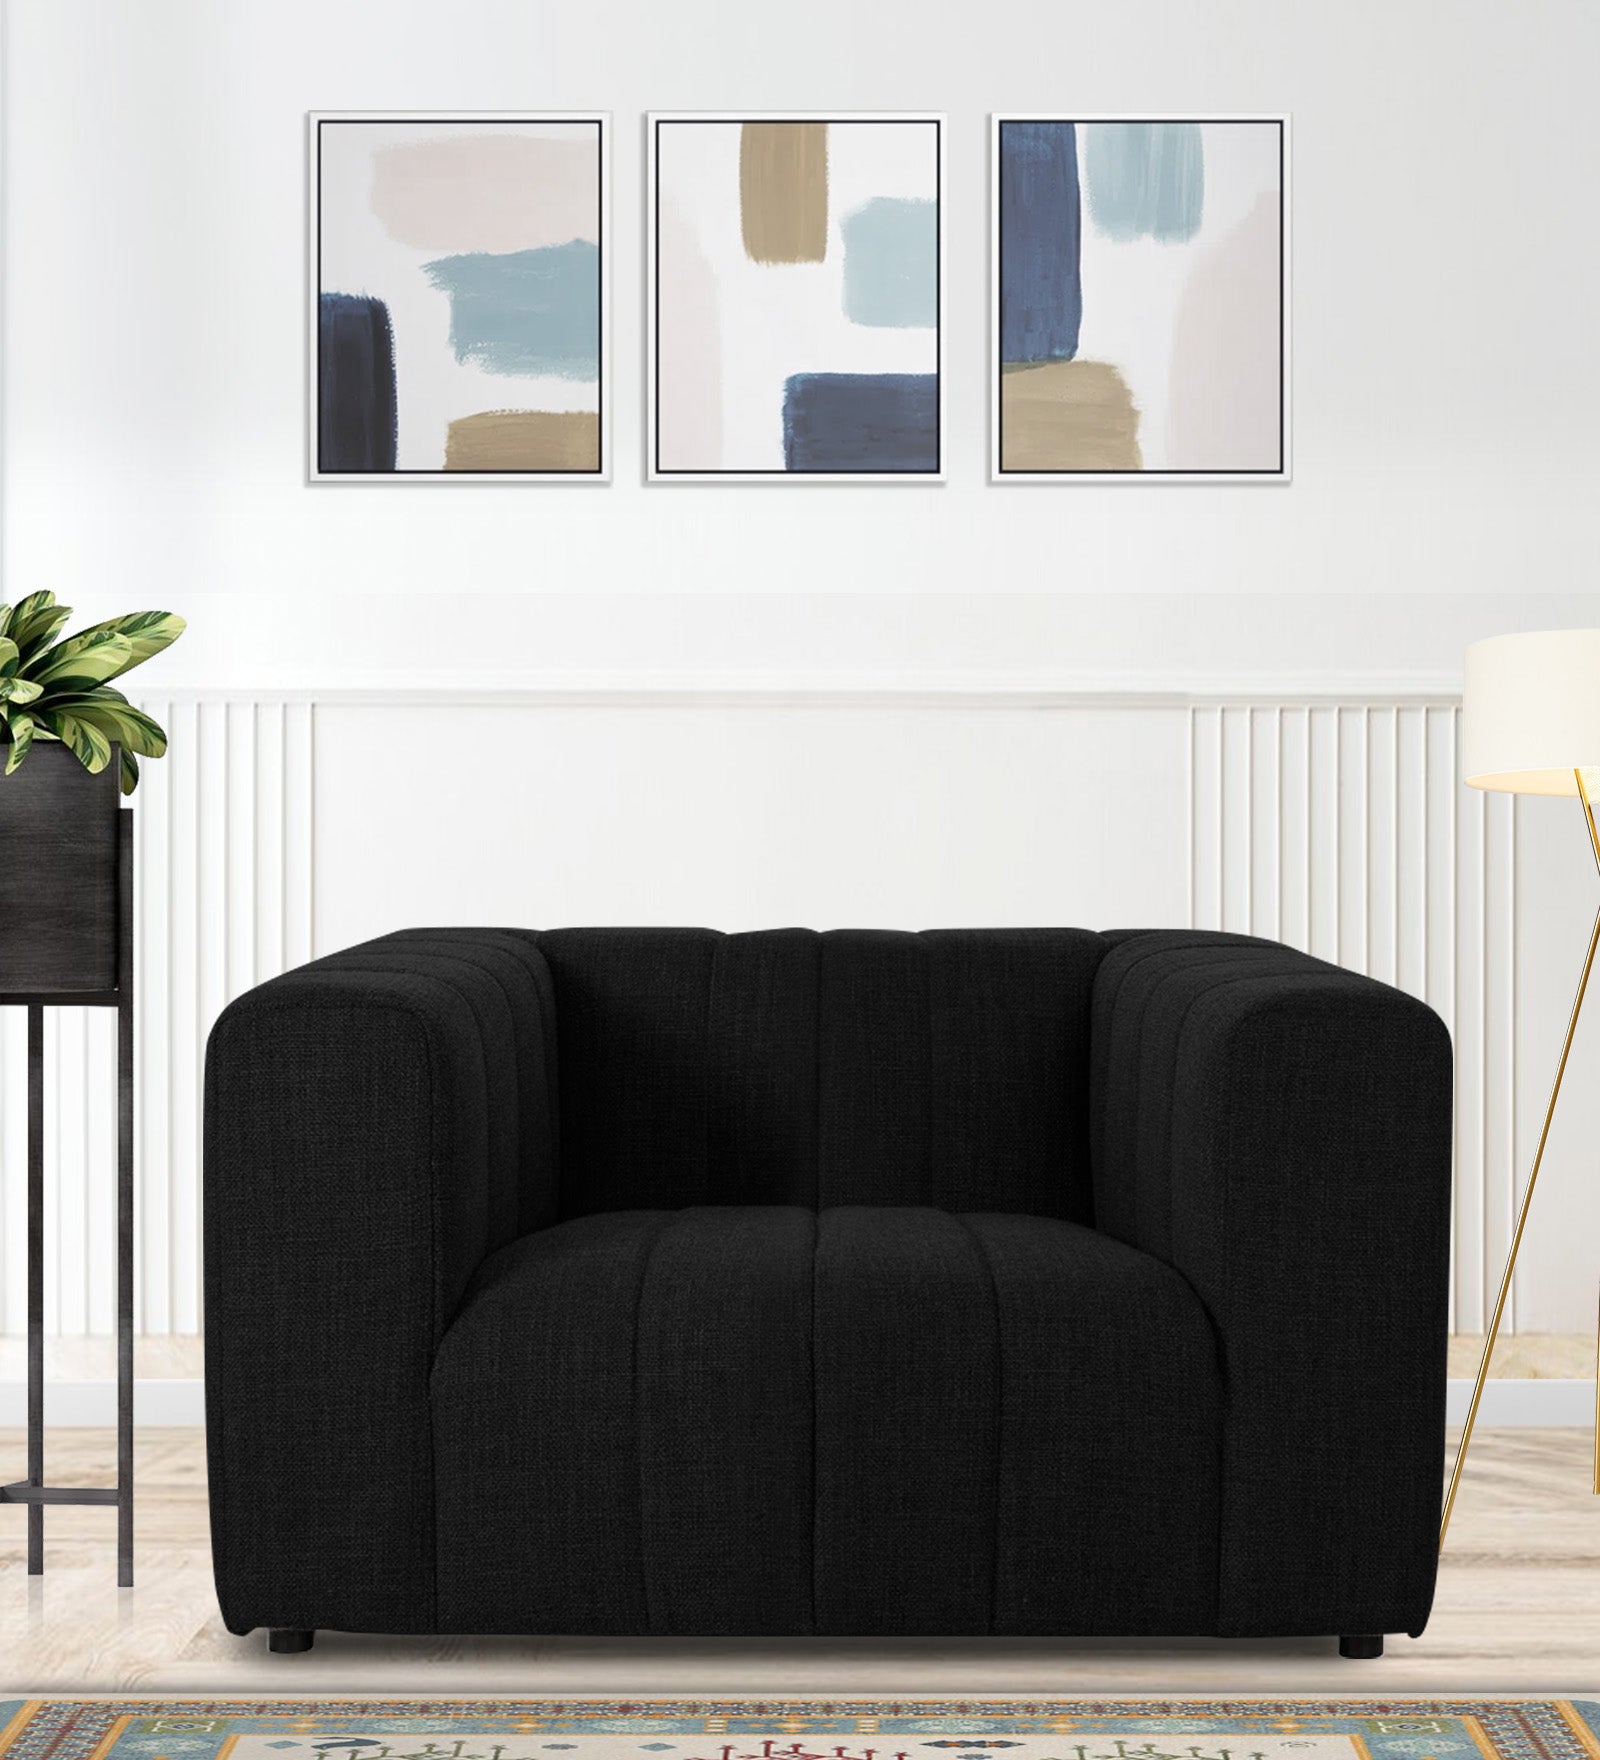 Lara Fabric 1 Seater Sofa in Zed Black Colour